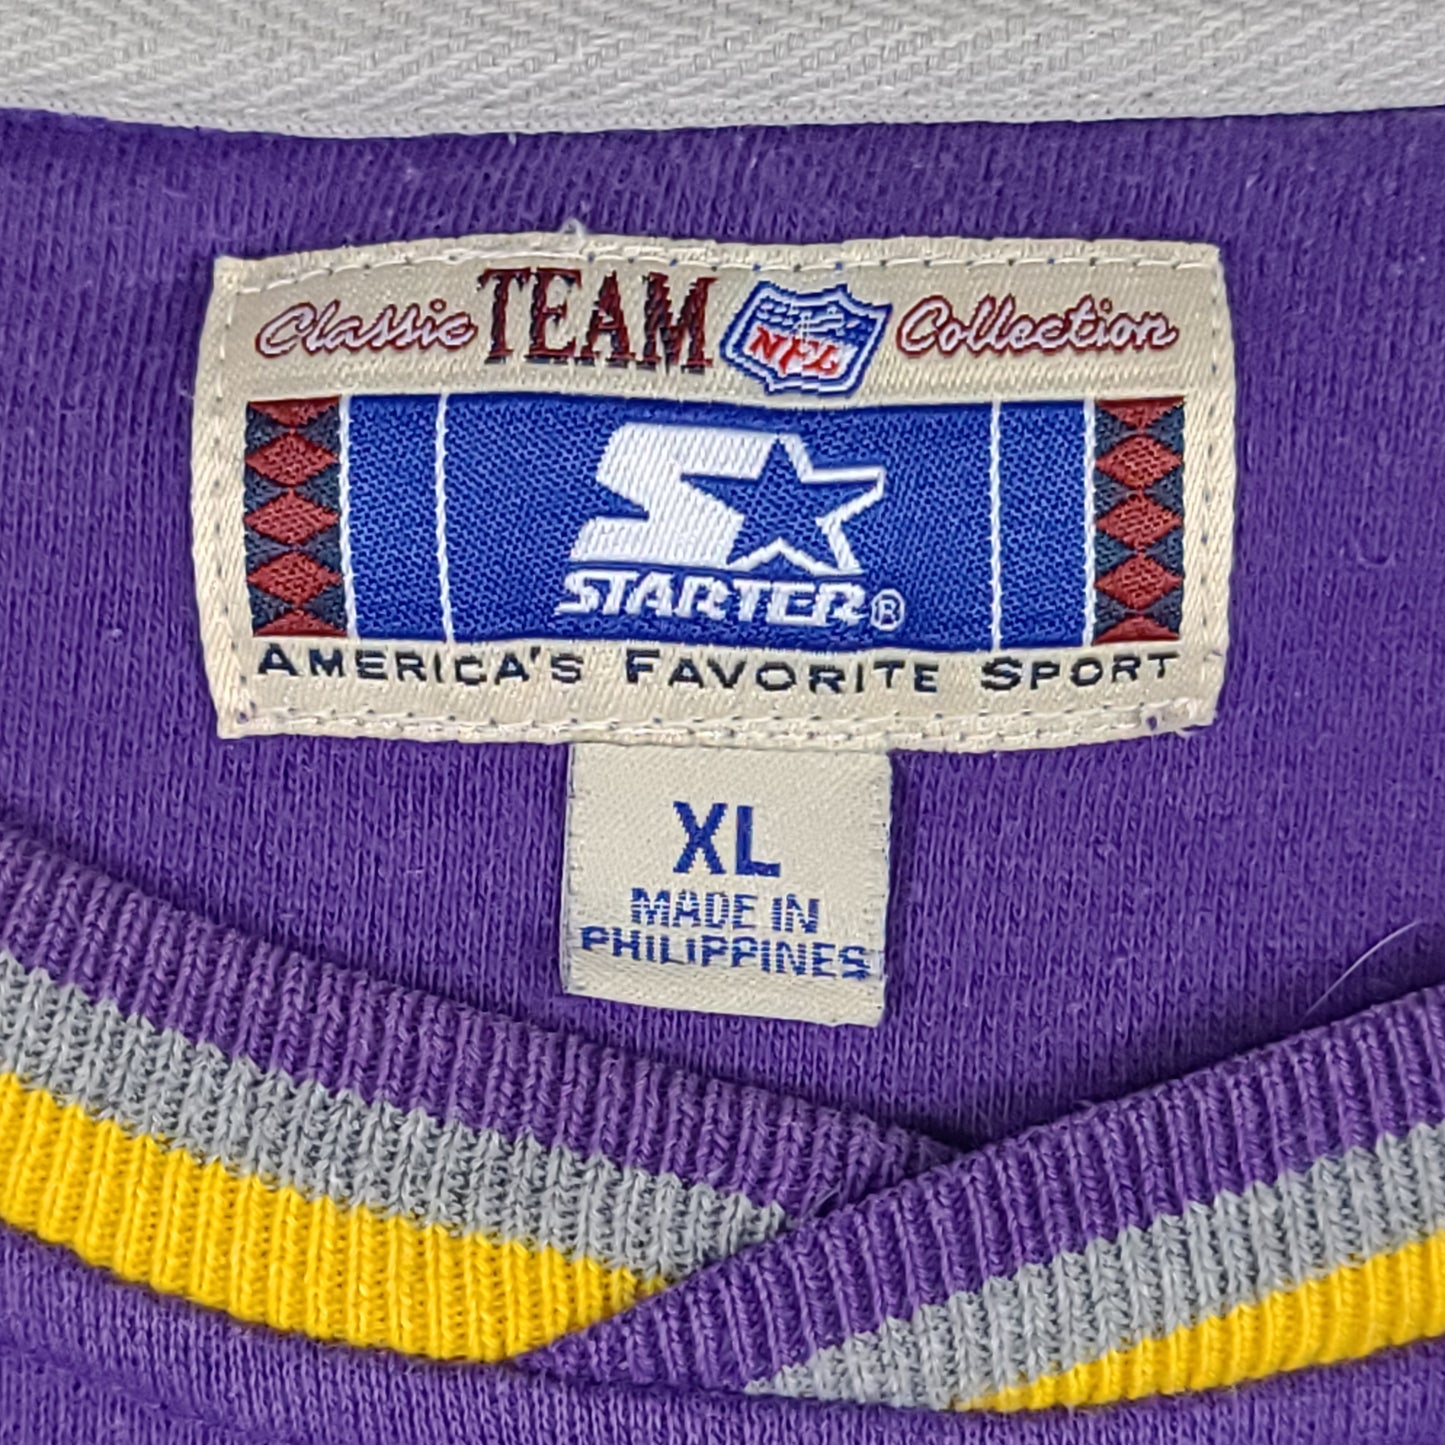 Vintage Minnesota Vikings Purple Starter Sweatshirt